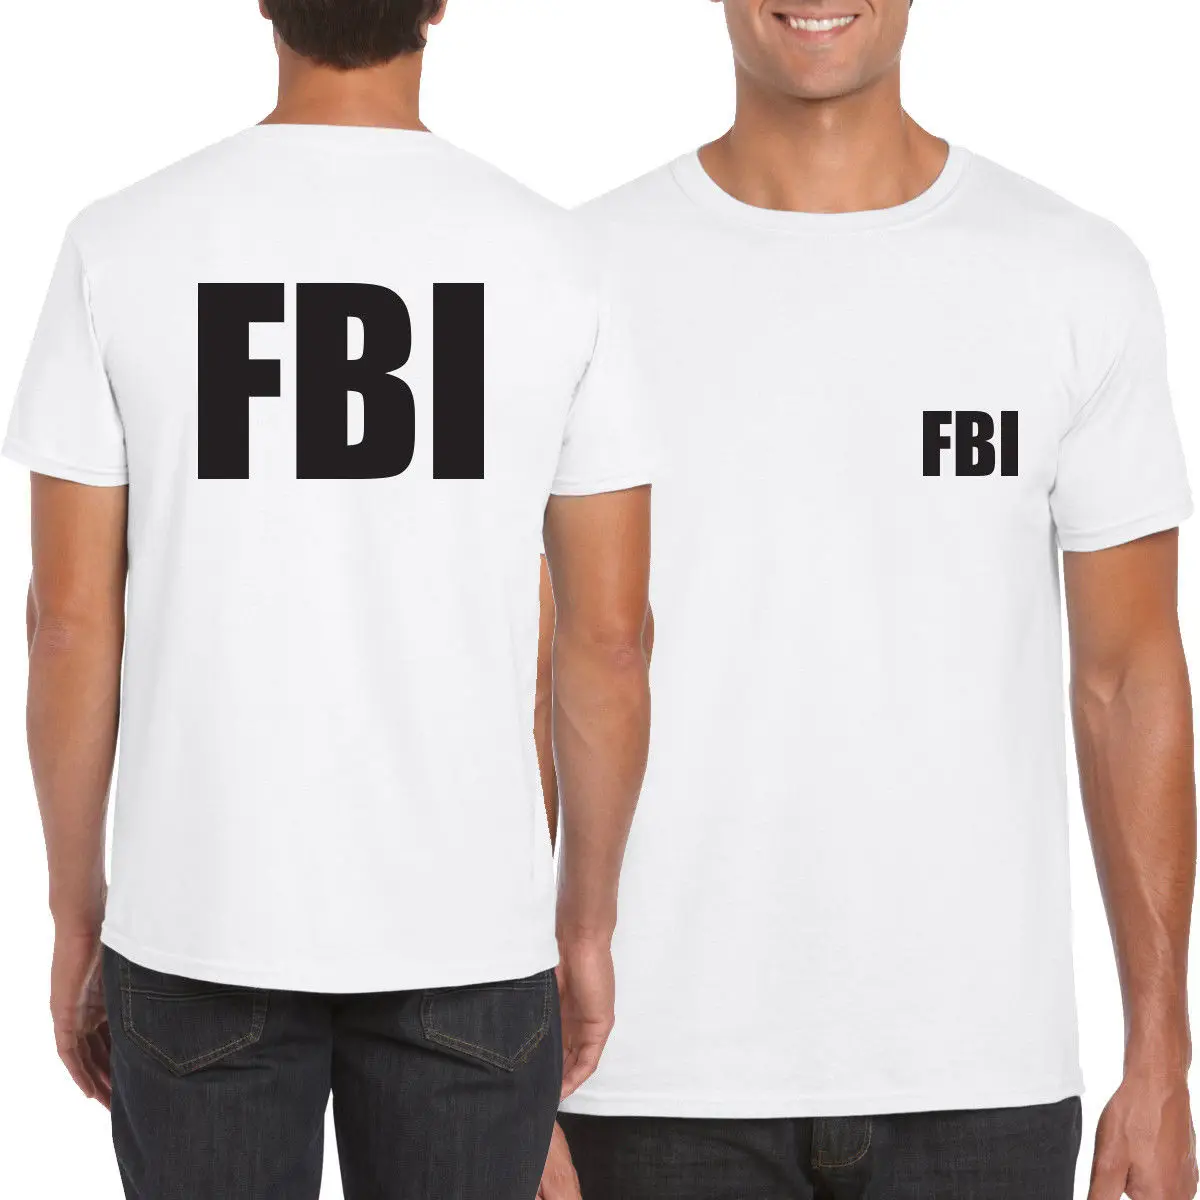 Полиция спецназ FBI безопасность Футболка Топ CSI необычное платье Новинка копы спецодежда хлопок короткий рукав Футболка подарок футболка